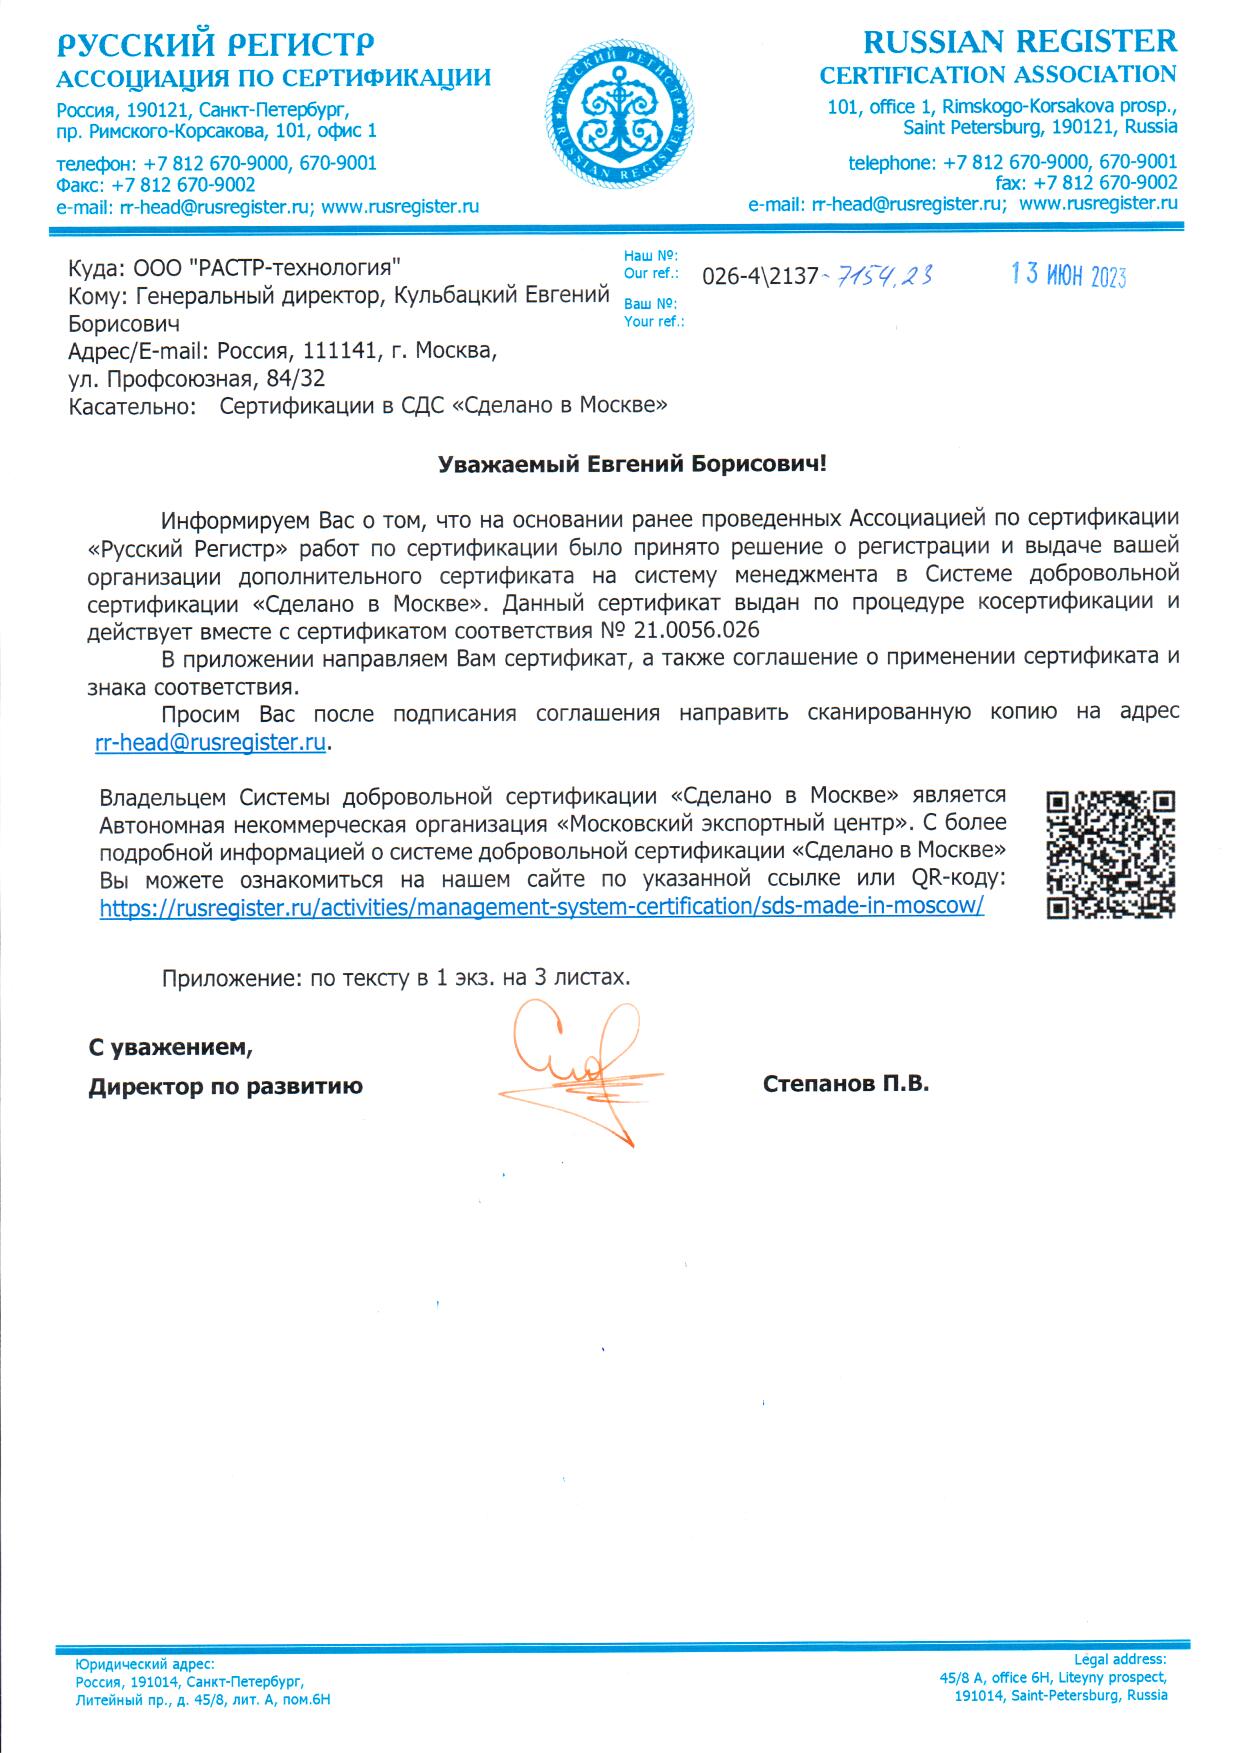 Сертификат соответствия «Сделано в Москве»